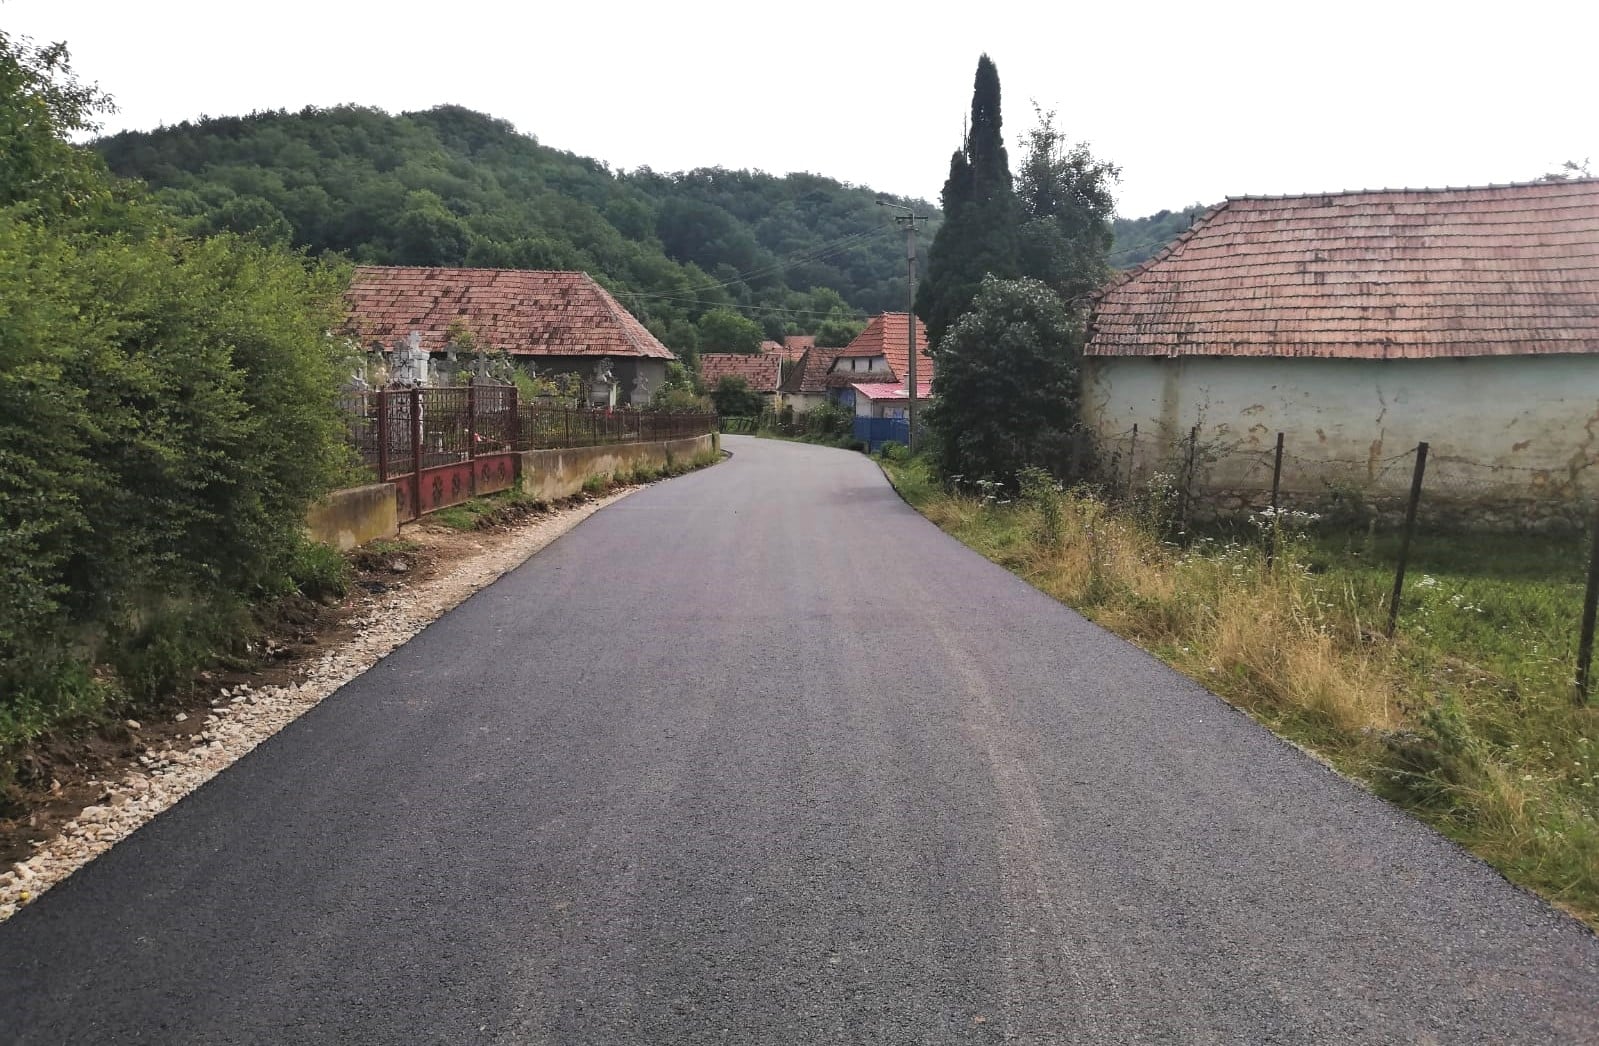 Cel mai sudic drum județean din Cluj care face legătură cu județul Alba, asfaltat integral